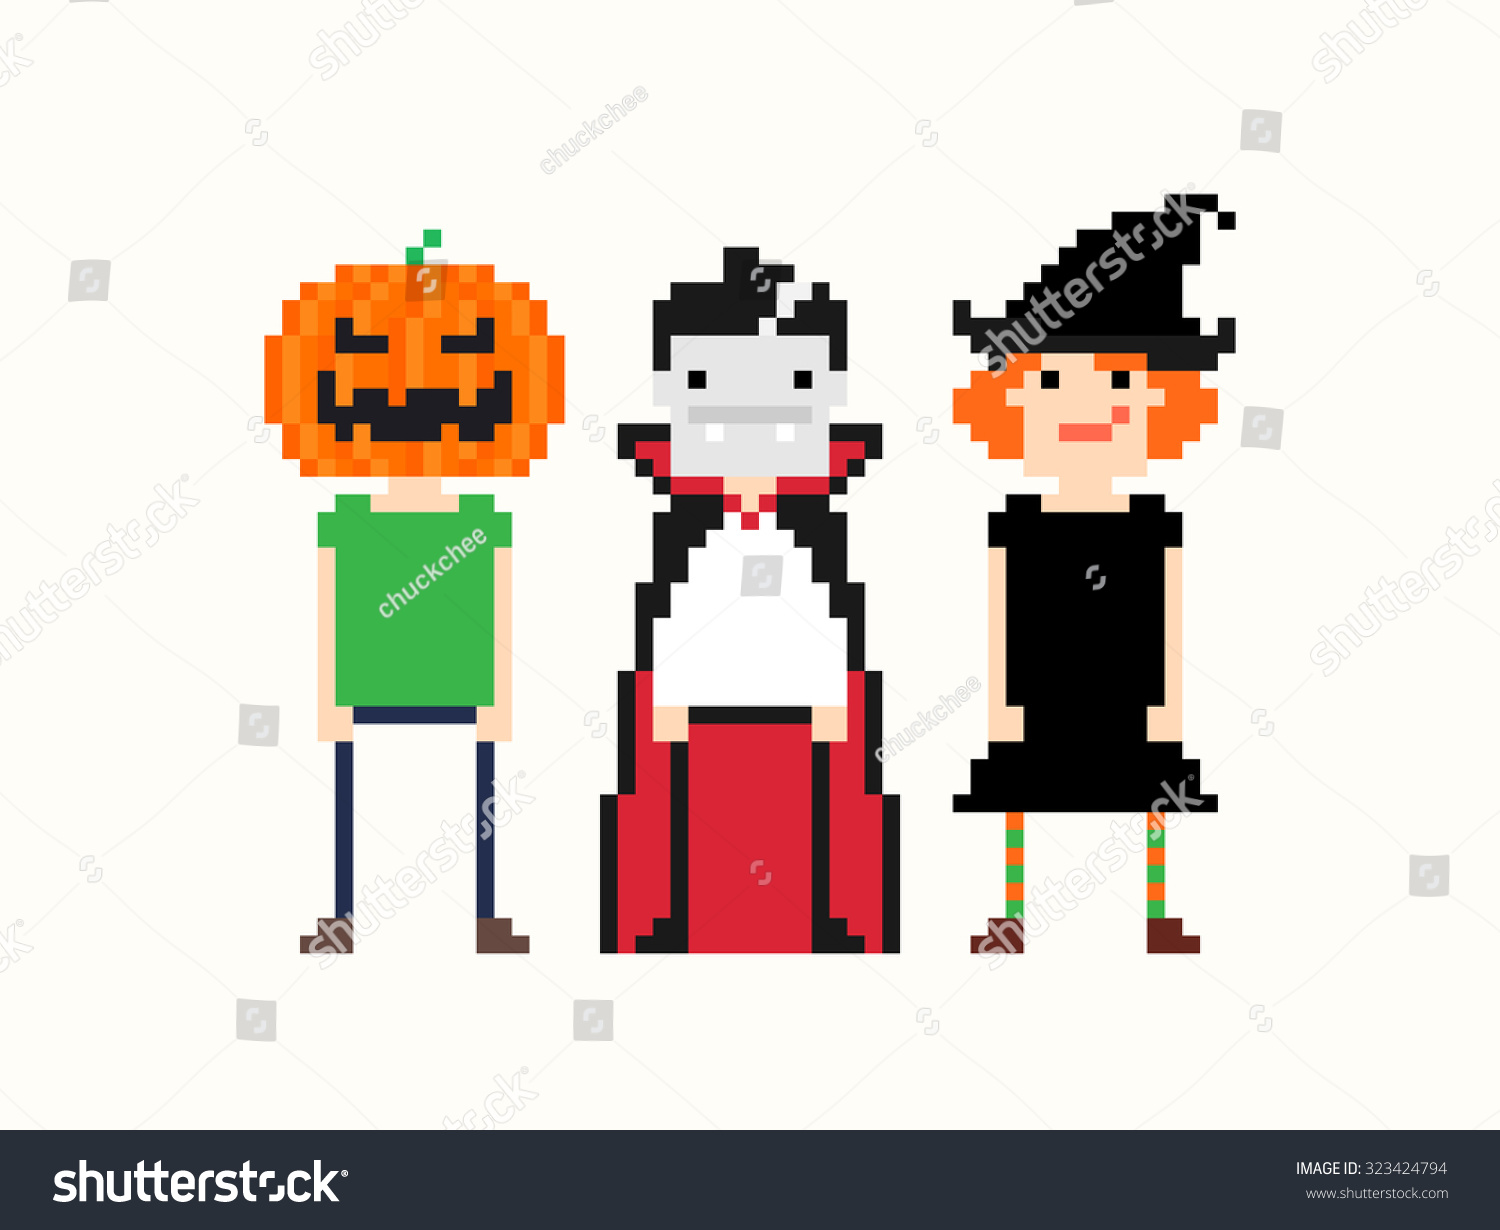 Pixel Art Characters In Halloween Stock Photo 323424794